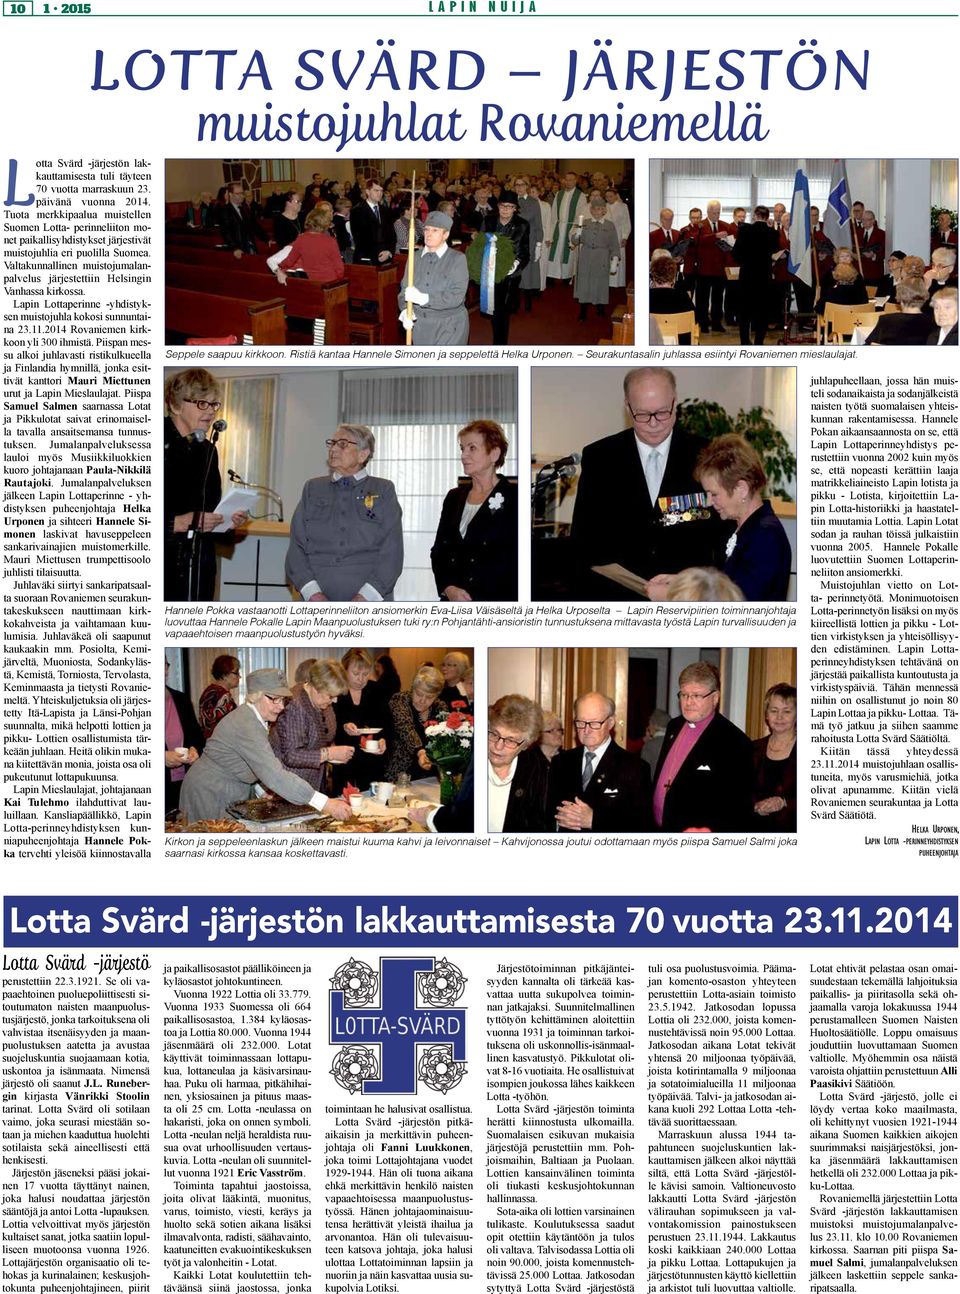 Valtakunnallinen muistojumalanpalvelus järjestettiin Helsingin Vanhassa kirkossa. Lapin Lottaperinne -yhdistyksen muistojuhla kokosi sunnuntaina 23.11.2014 Rovaniemen kirkkoon yli 300 ihmistä.